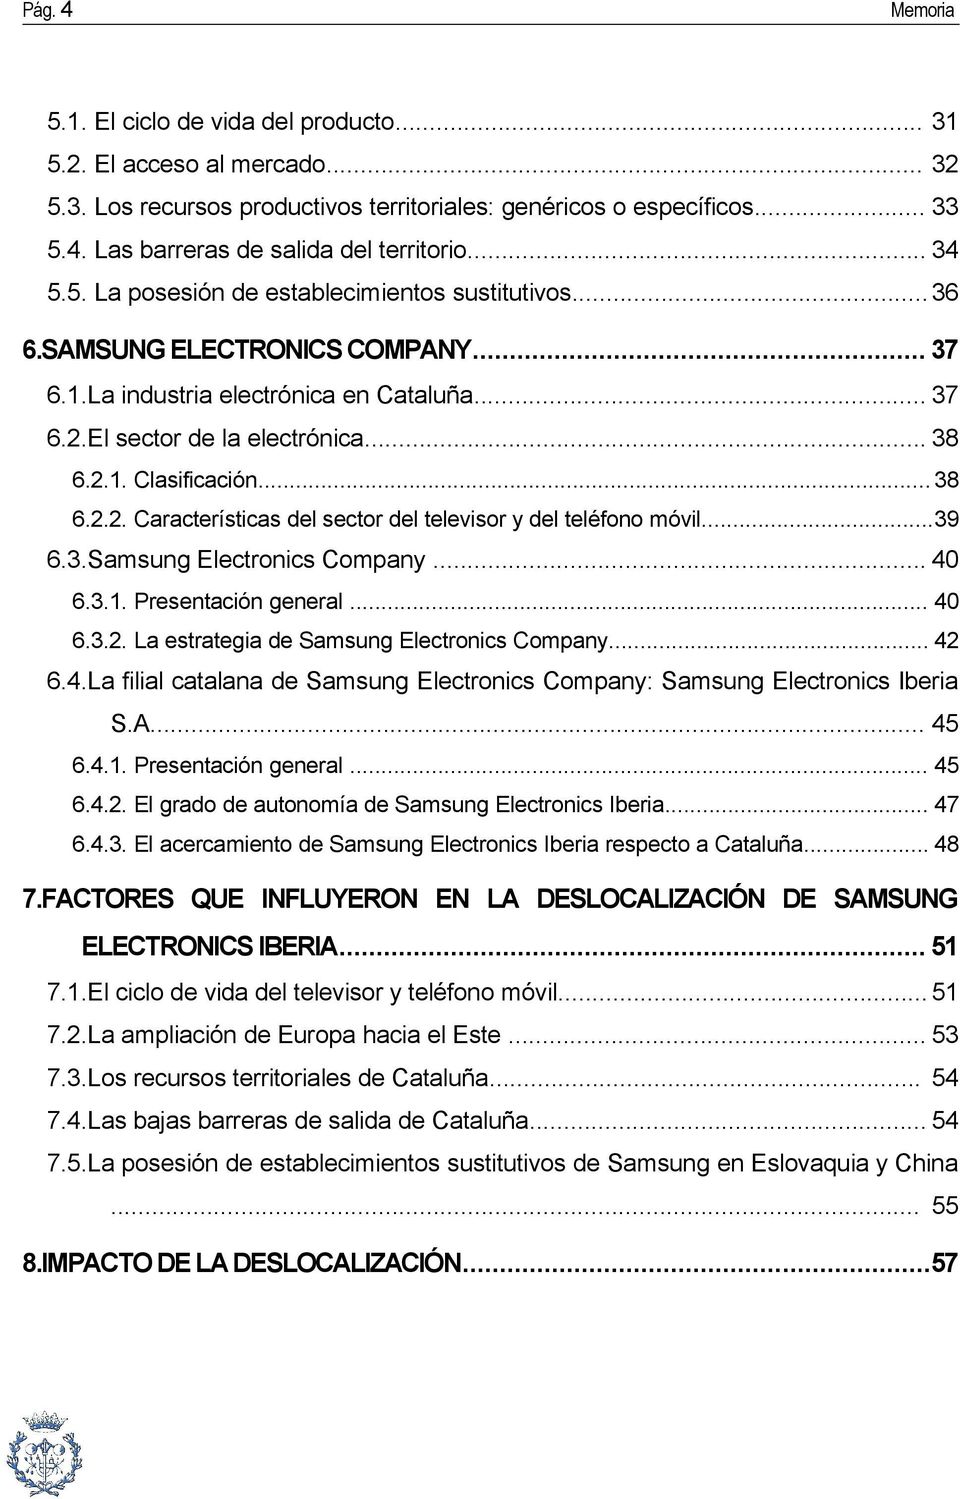 .. 38 6.2.2. Características del sector del televisor y del teléfono móvil...39 6.3.Samsung Electronics Company... 40 6.3.1. Presentación general... 40 6.3.2. La estrategia de Samsung Electronics Company.